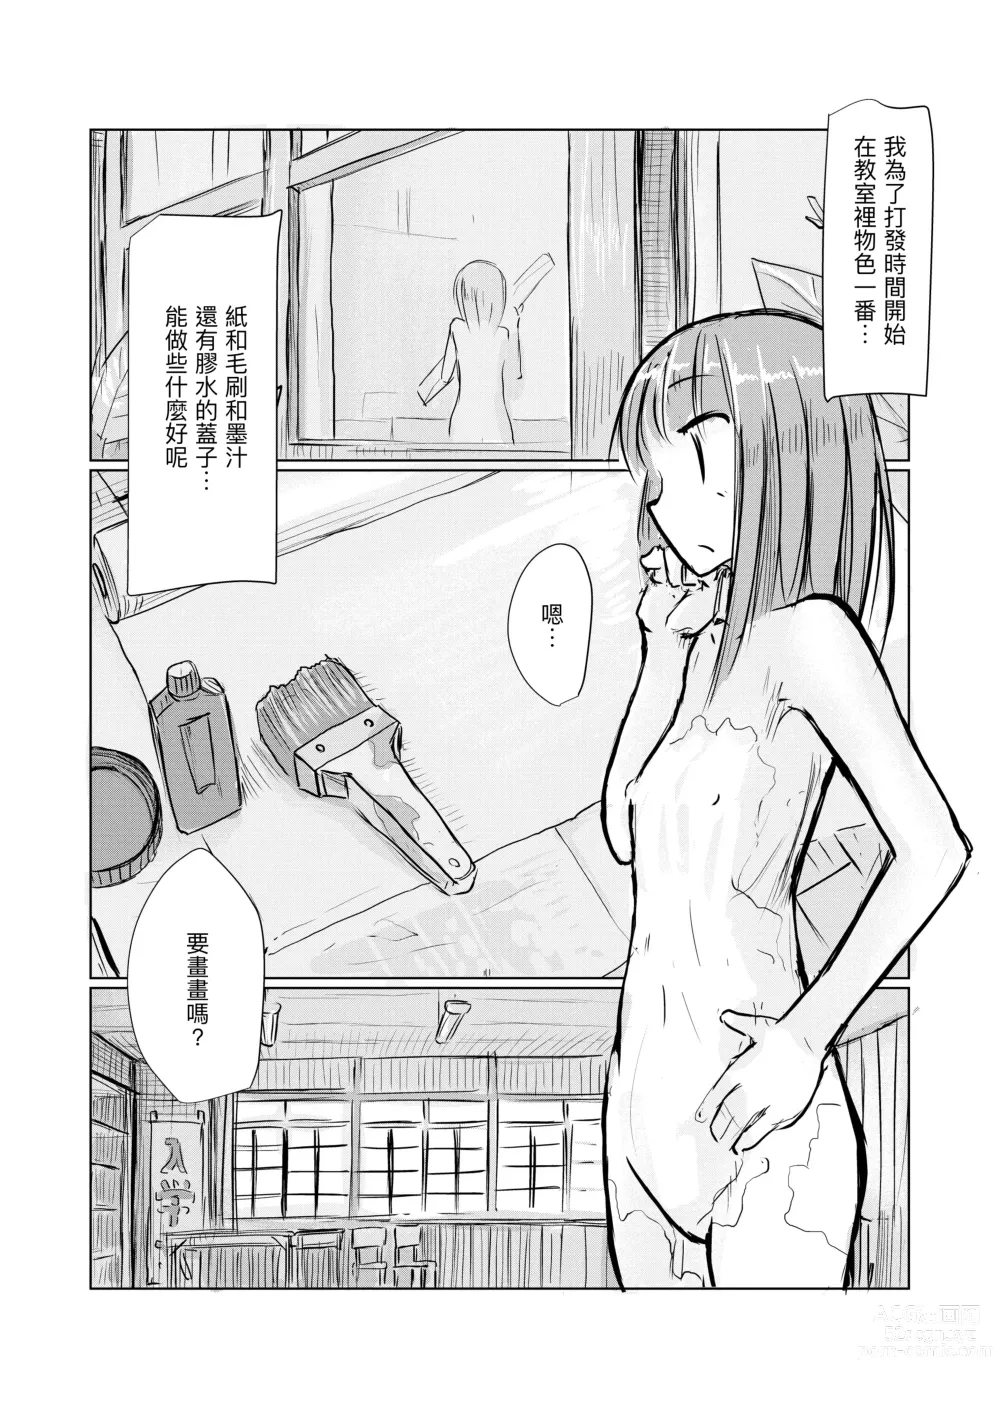 Page 30 of doujinshi Shoujo to Haikousha II